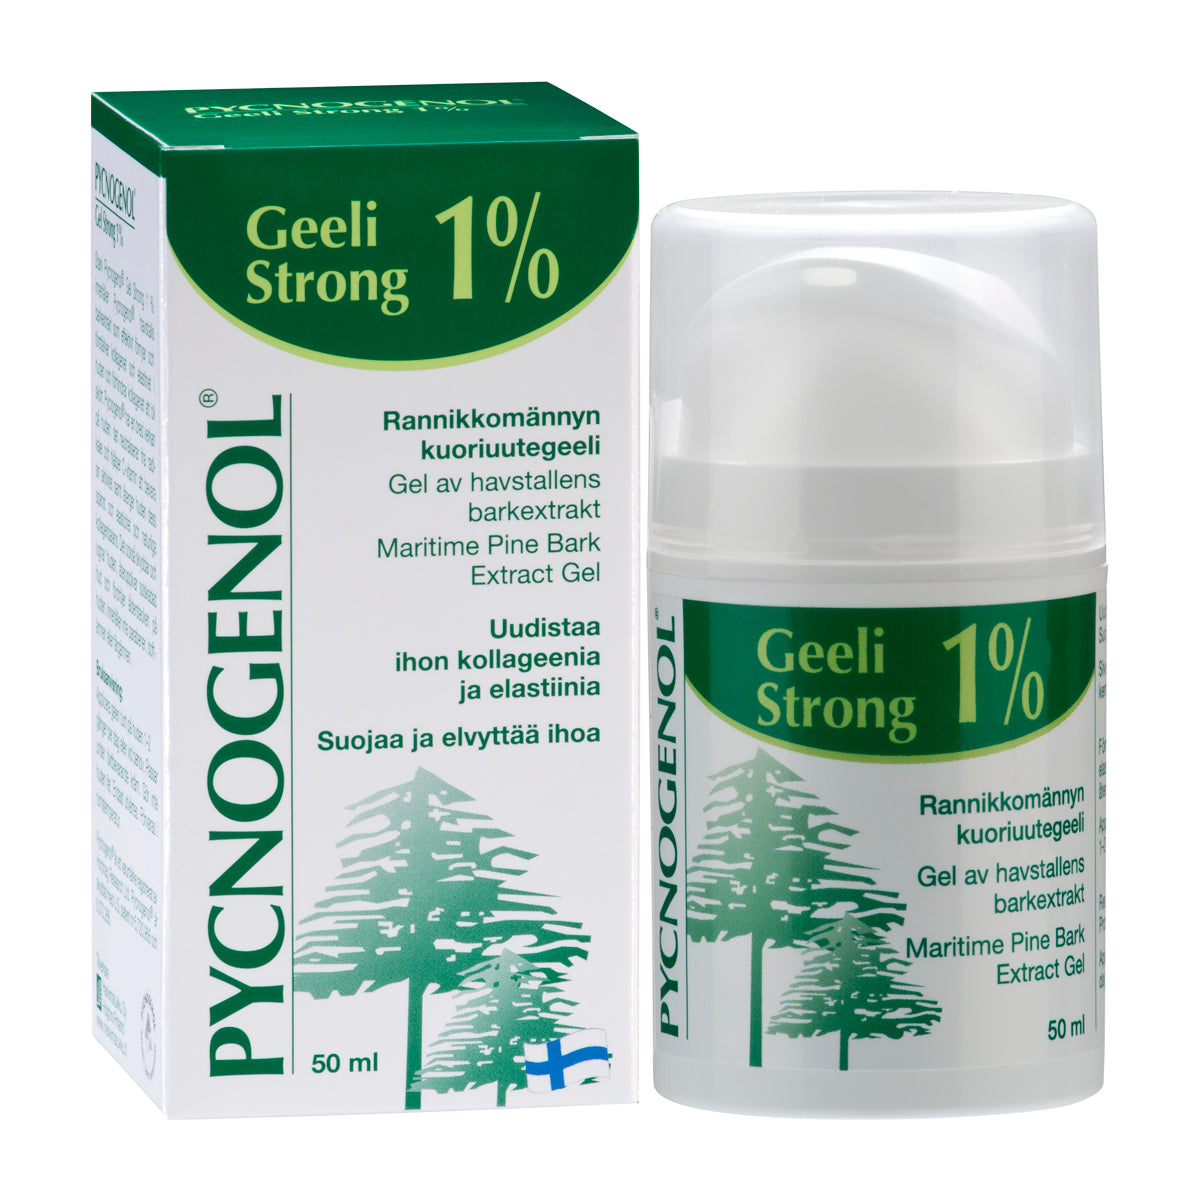 Pycnogenol Geeli Strong 1 %-Hankintatukku-Hyvinvoinnin Tavaratalo